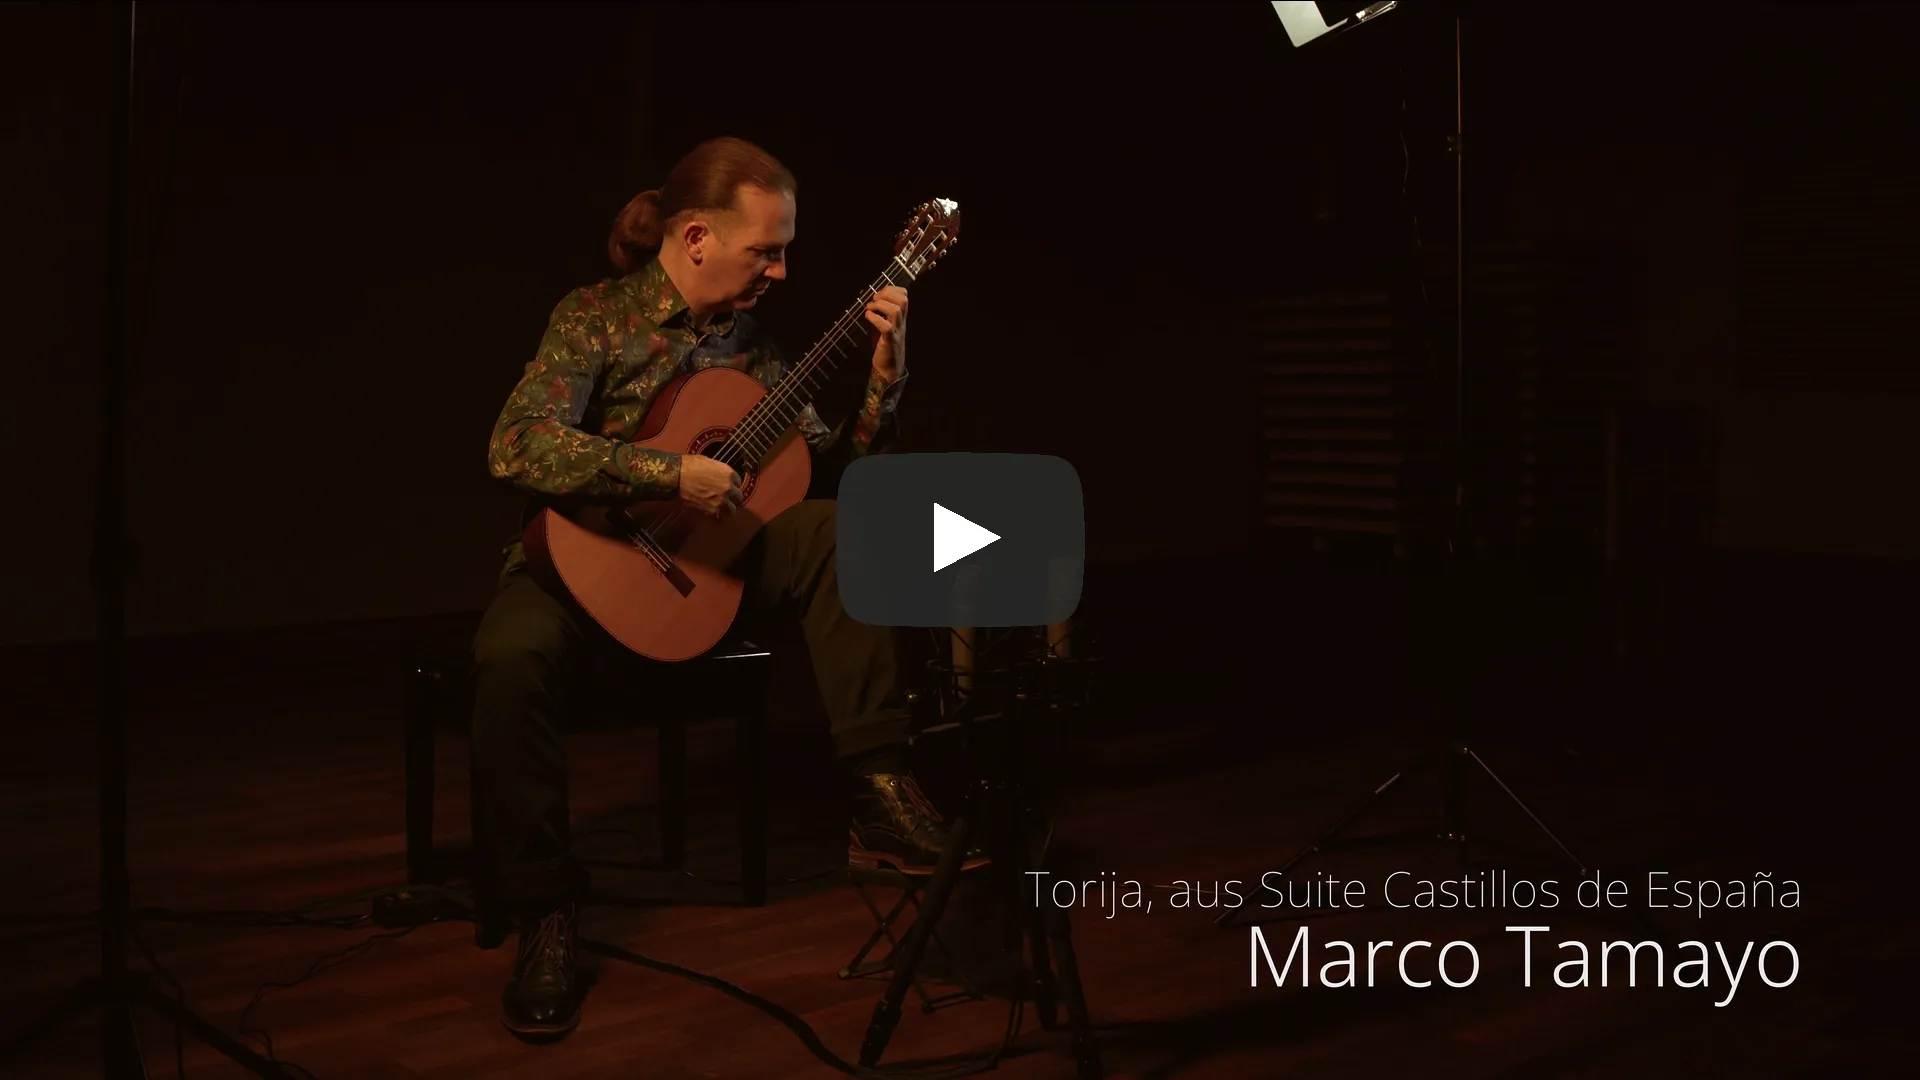 Marco Tamayo - Torija, aus Suite Castillos de España